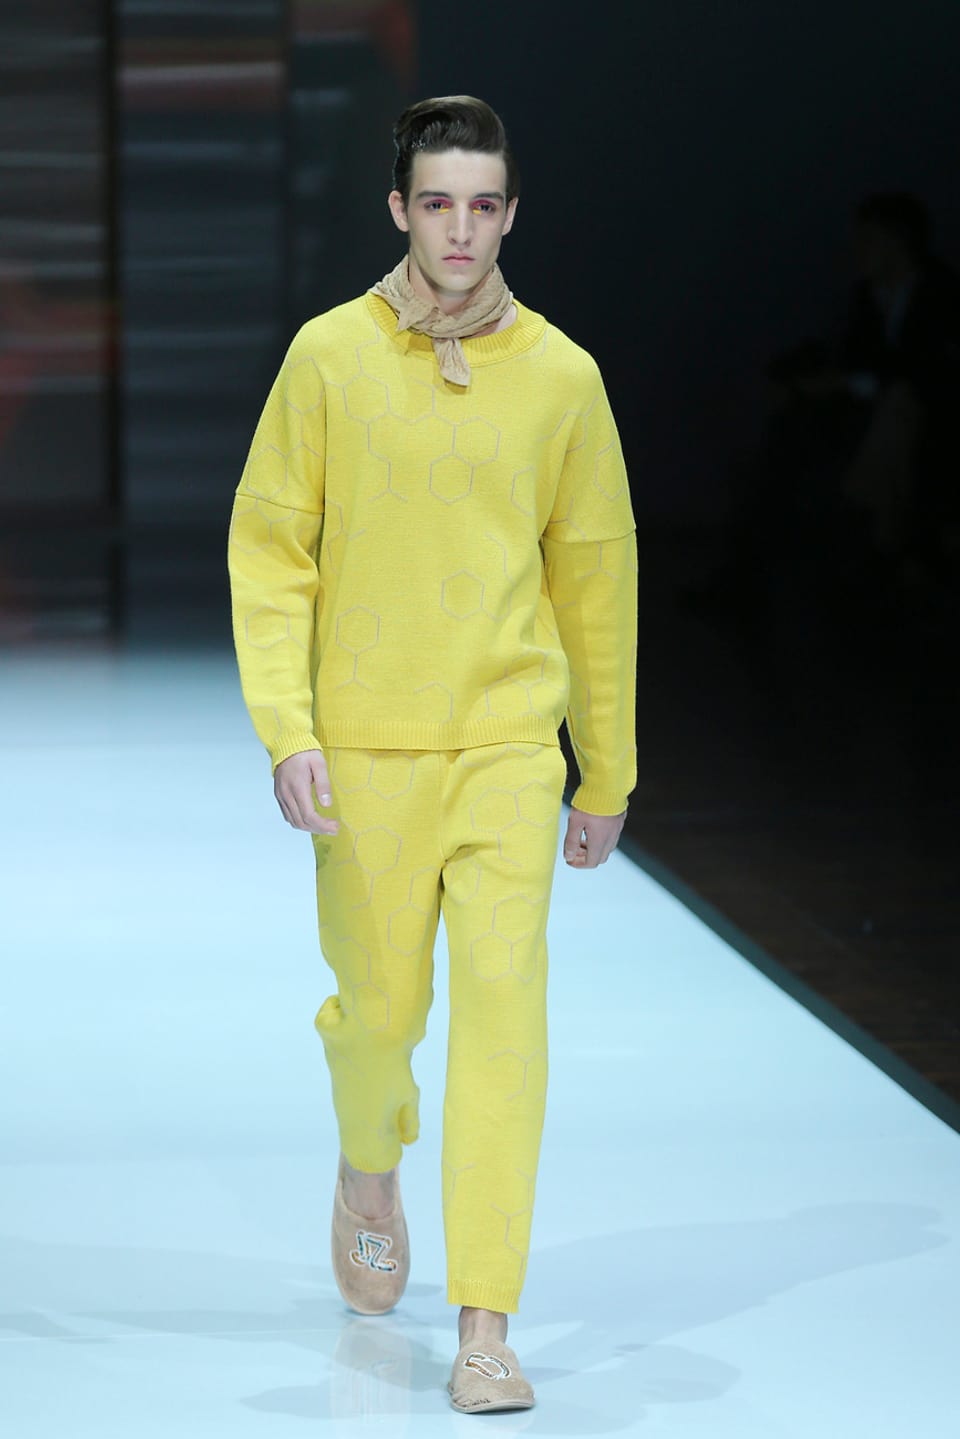 Model auf dem Laufsteg in gelben Kleider